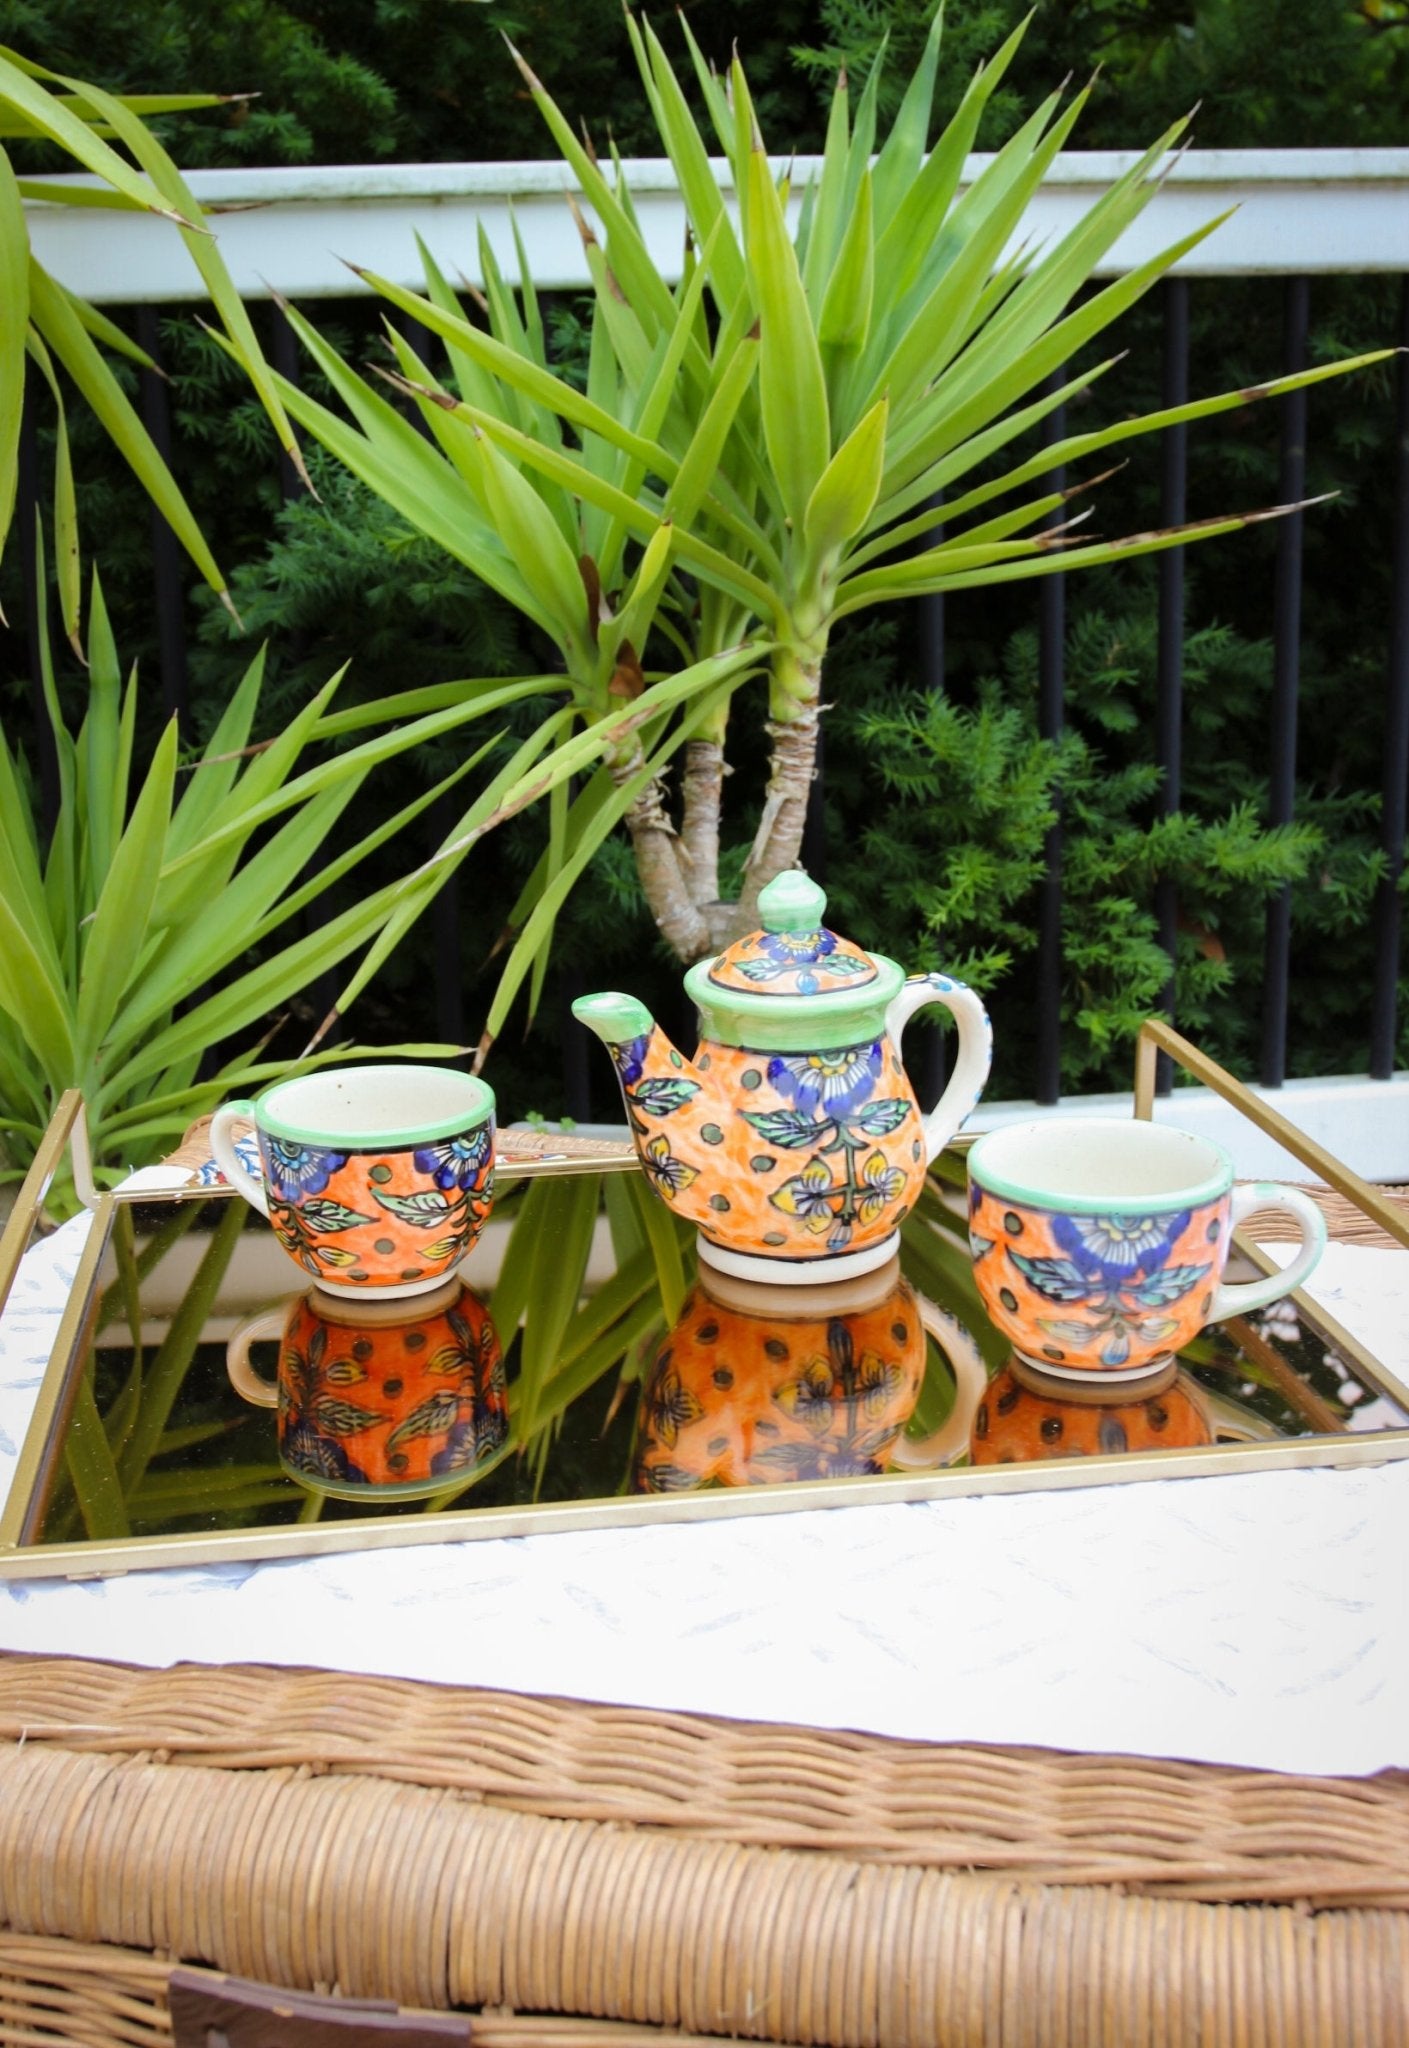 Sienna Leaf Tea Pot - CHYATEE